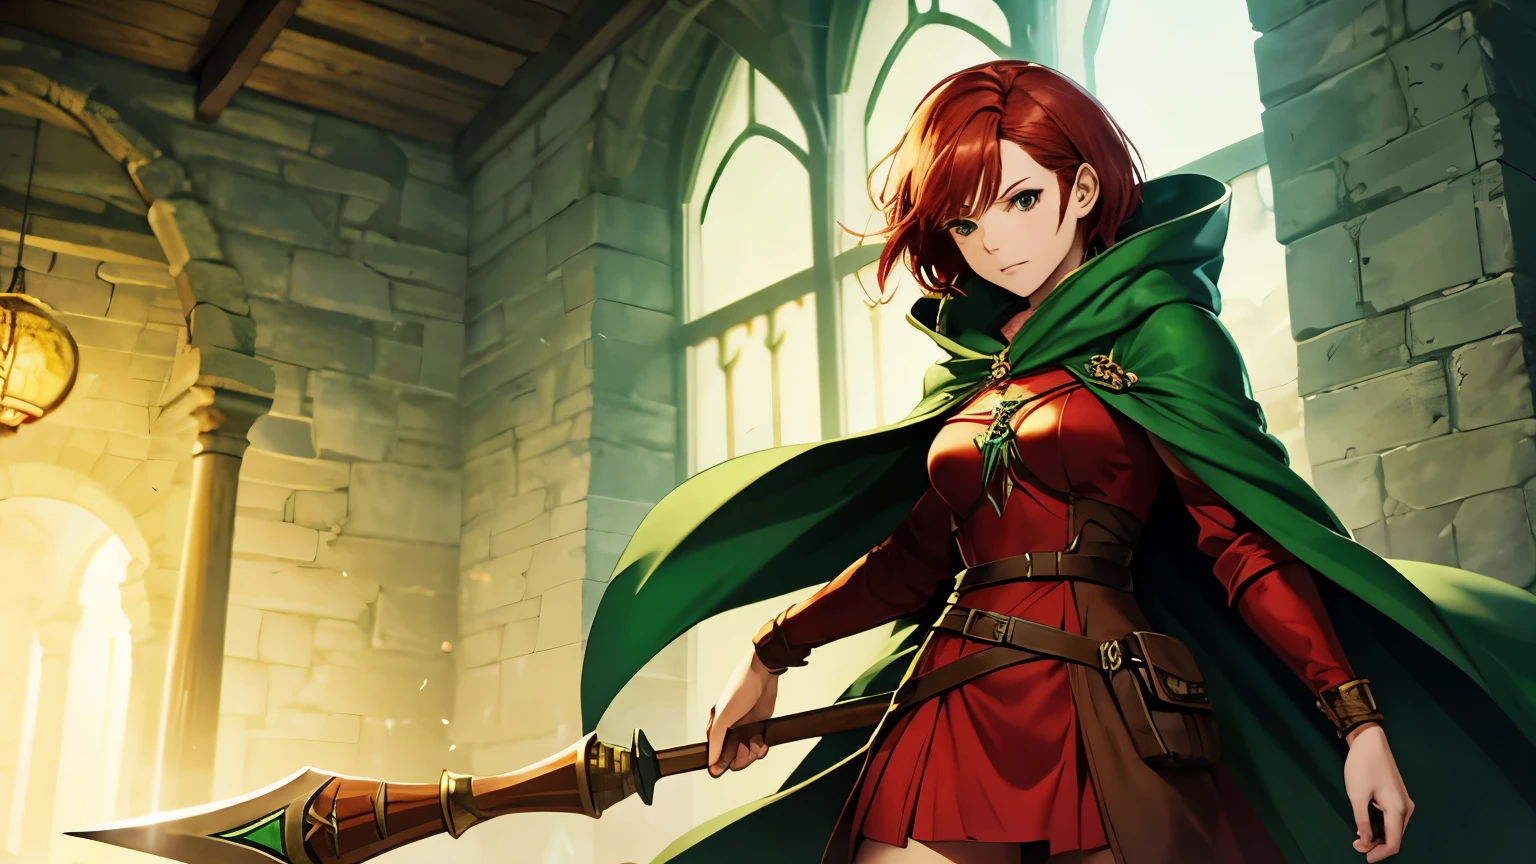 Frauen mit kurzen roten Haaren, grüner Umhang, Holzstab, dungeon, Fantasie